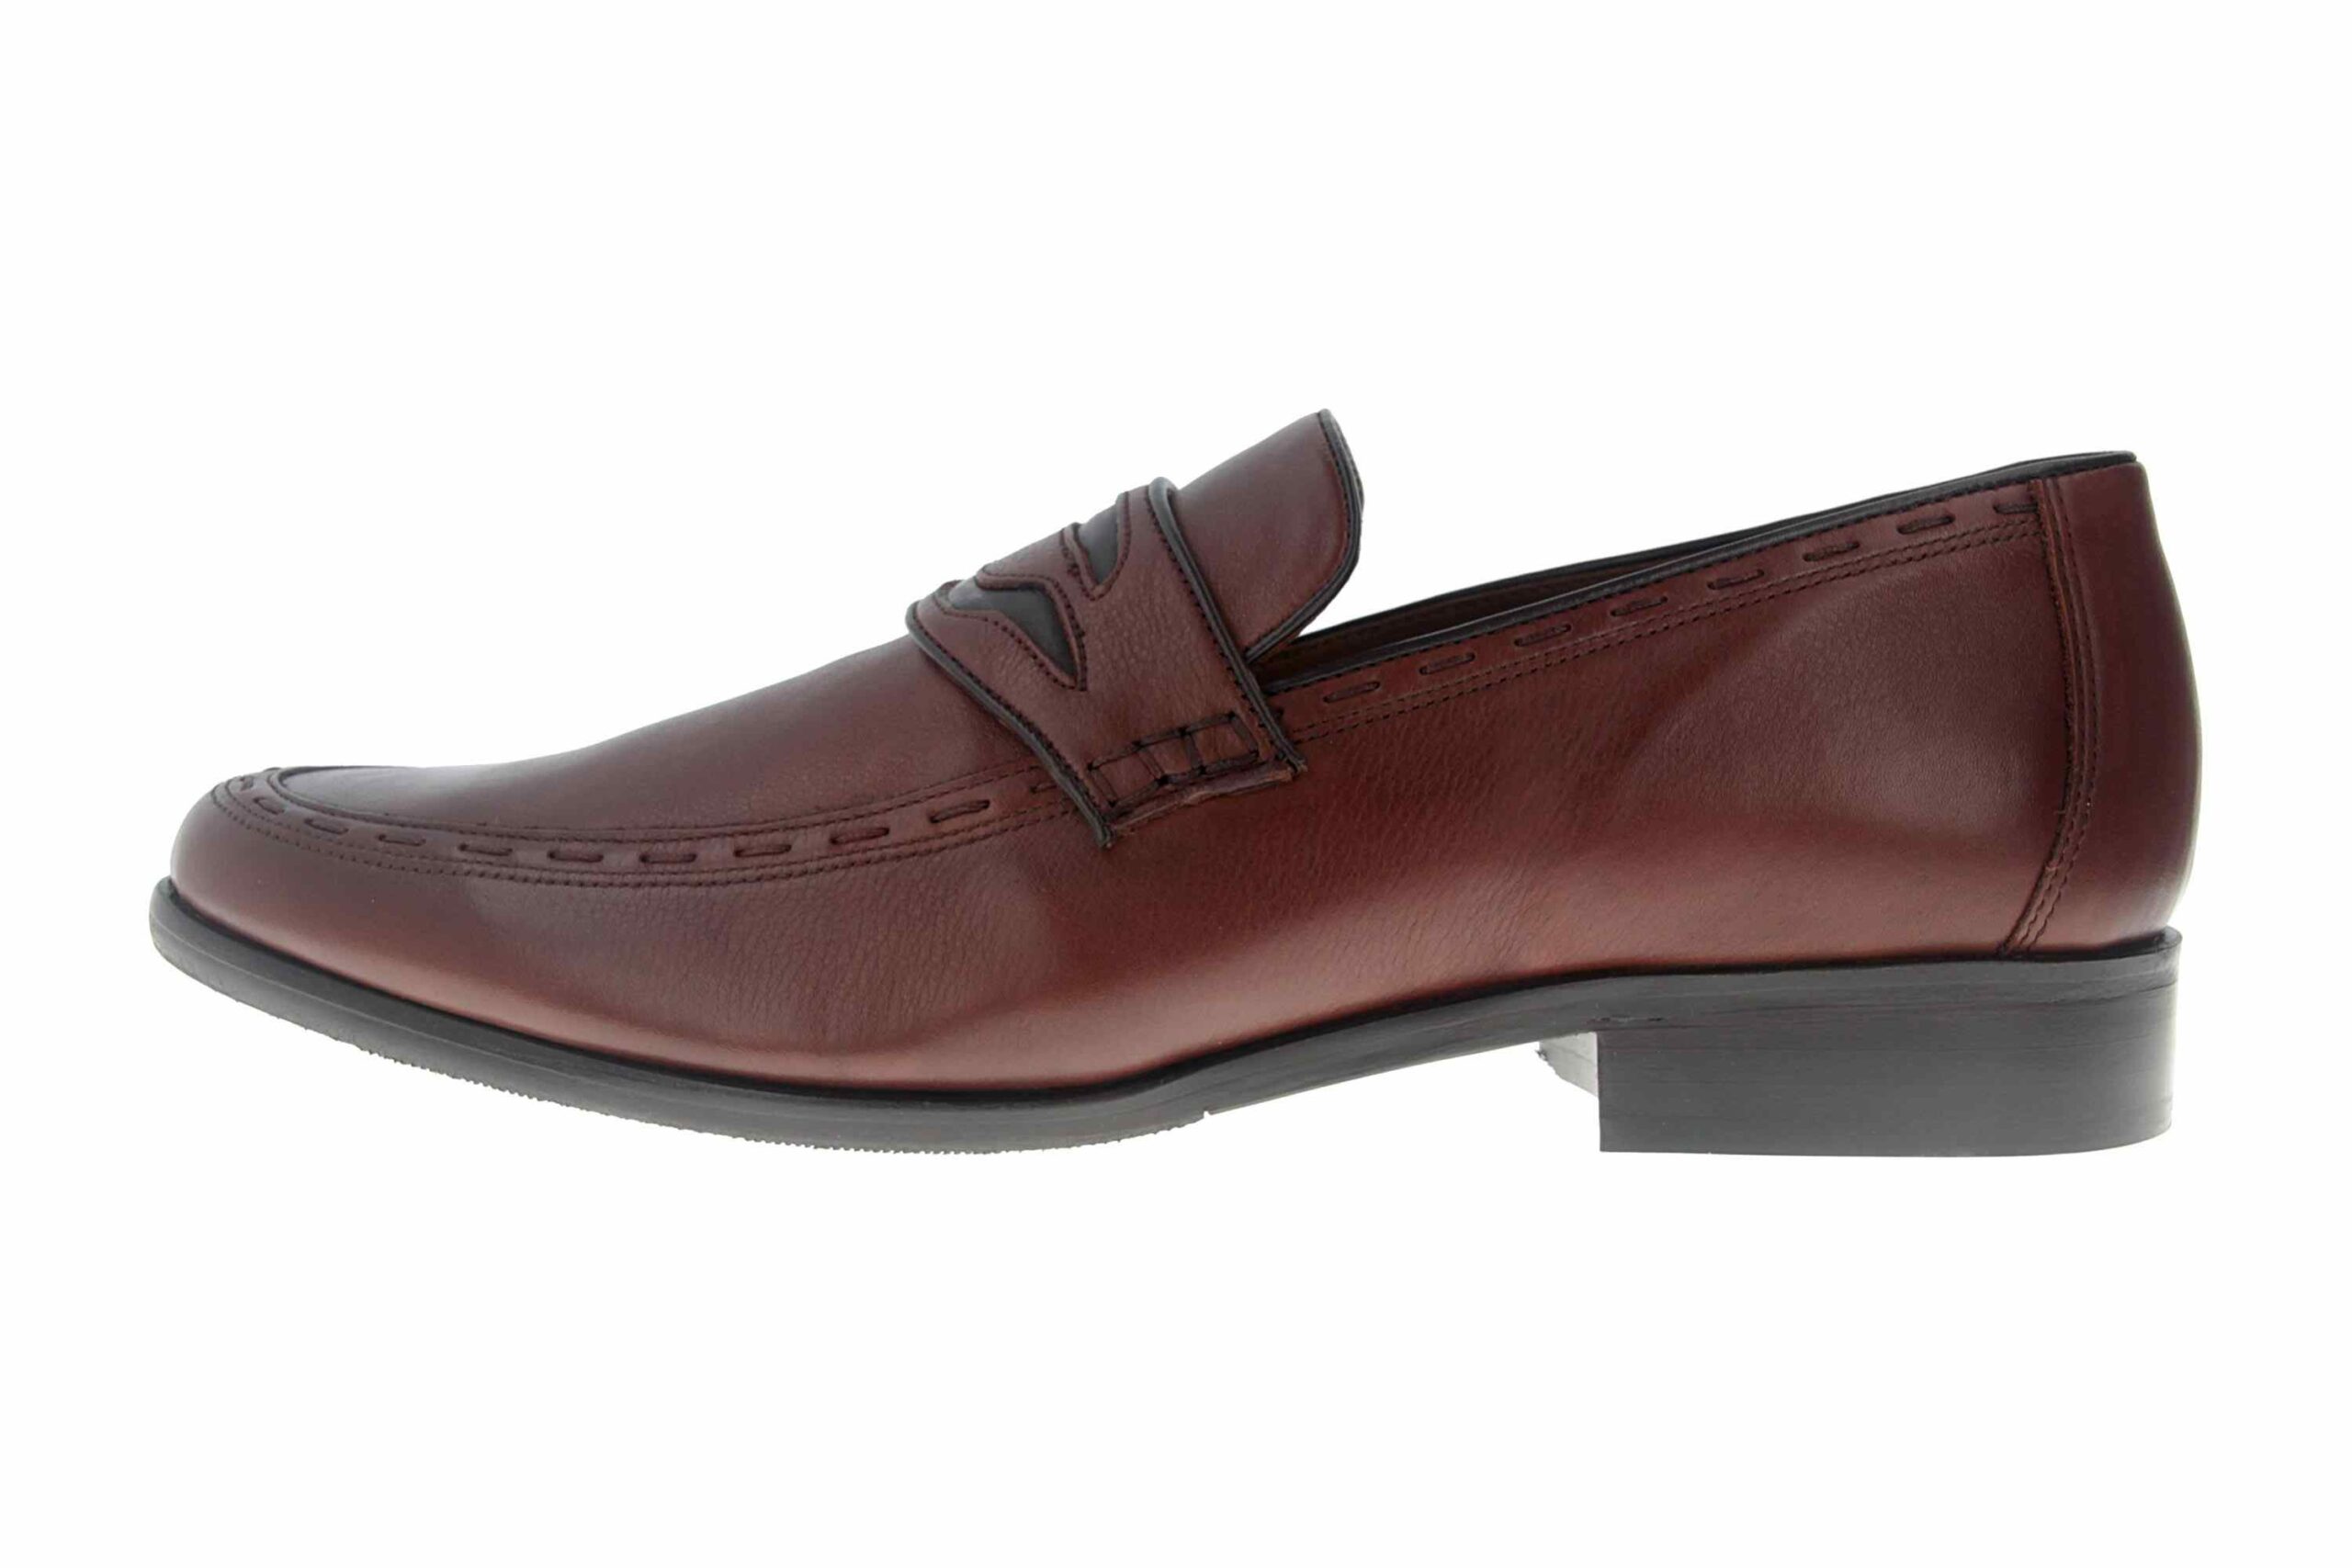 Manz Enrico AGO Business-Schuhe in Übergrößen Braun 111010-03-235 große Herrenschuhe